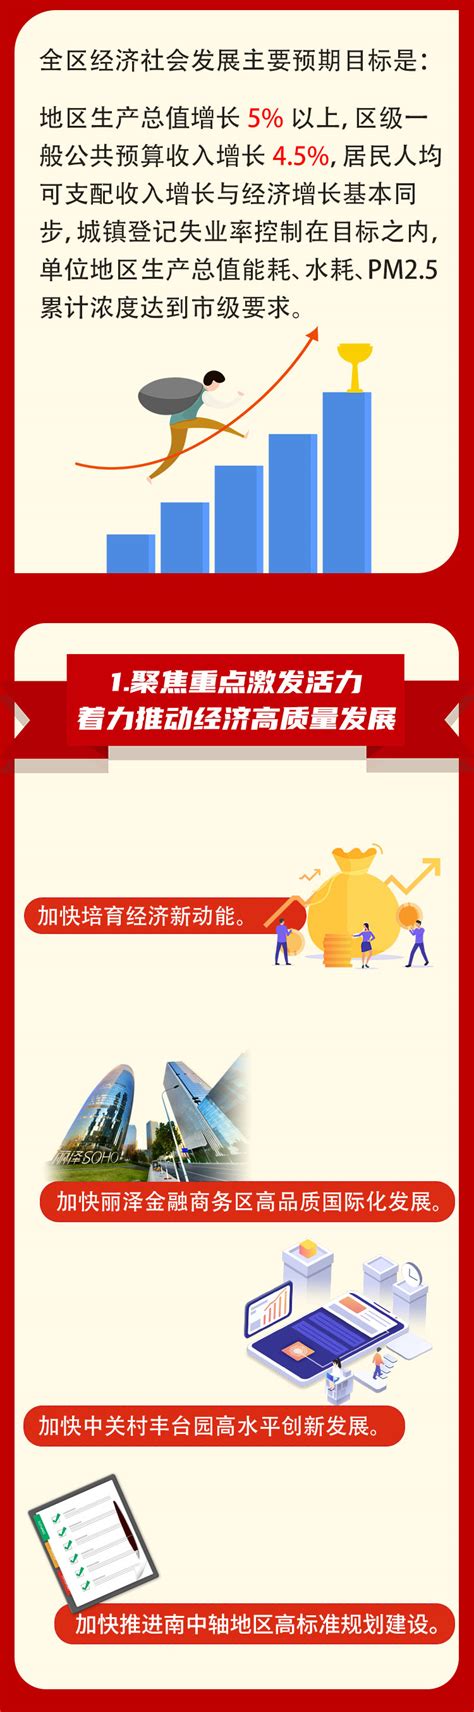 【图解】一图读懂丨2021年丰台区政府工作报告-北京市丰台区人民政府网站